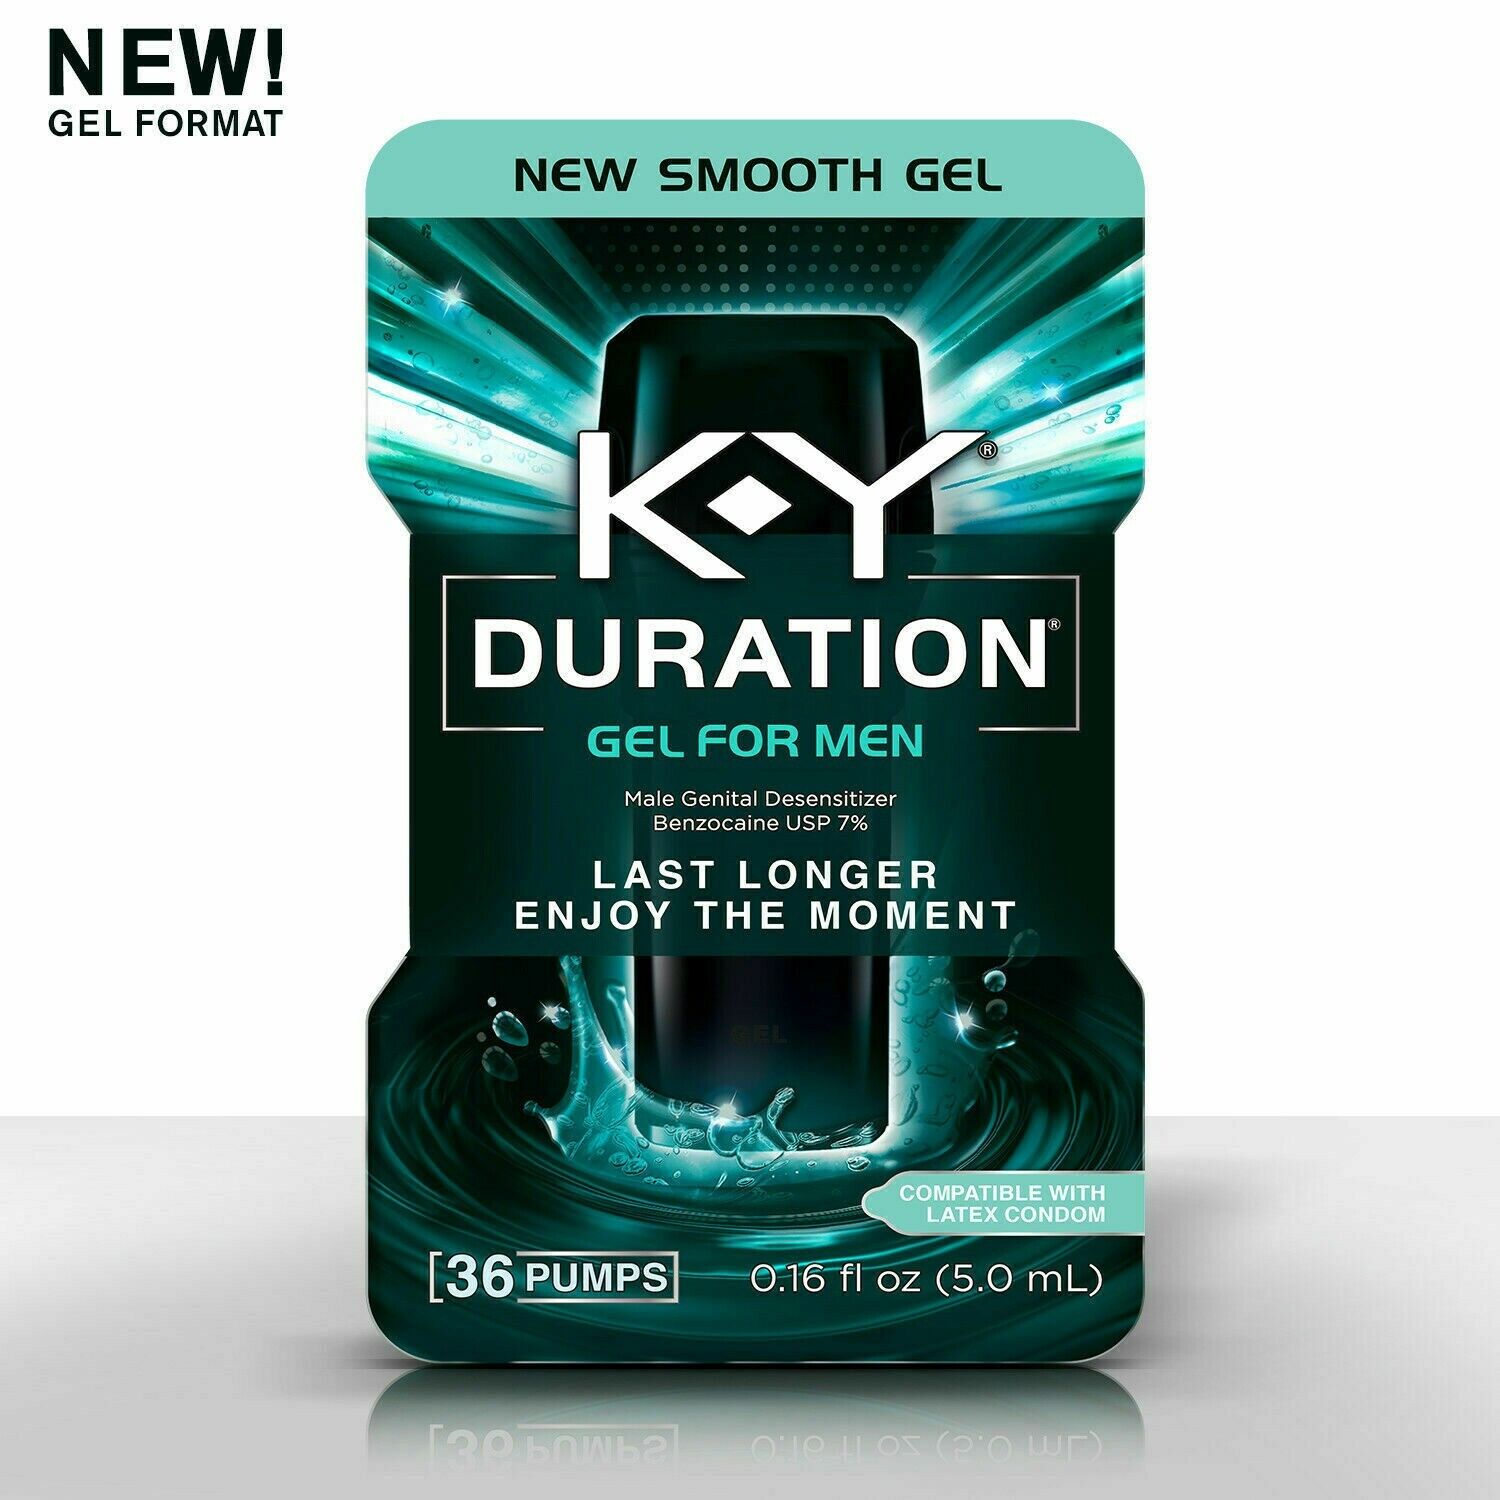 K-Y Duration Gel for Men Last Longer-Enjoy The Moment 36 pumps*EXP 1/20*